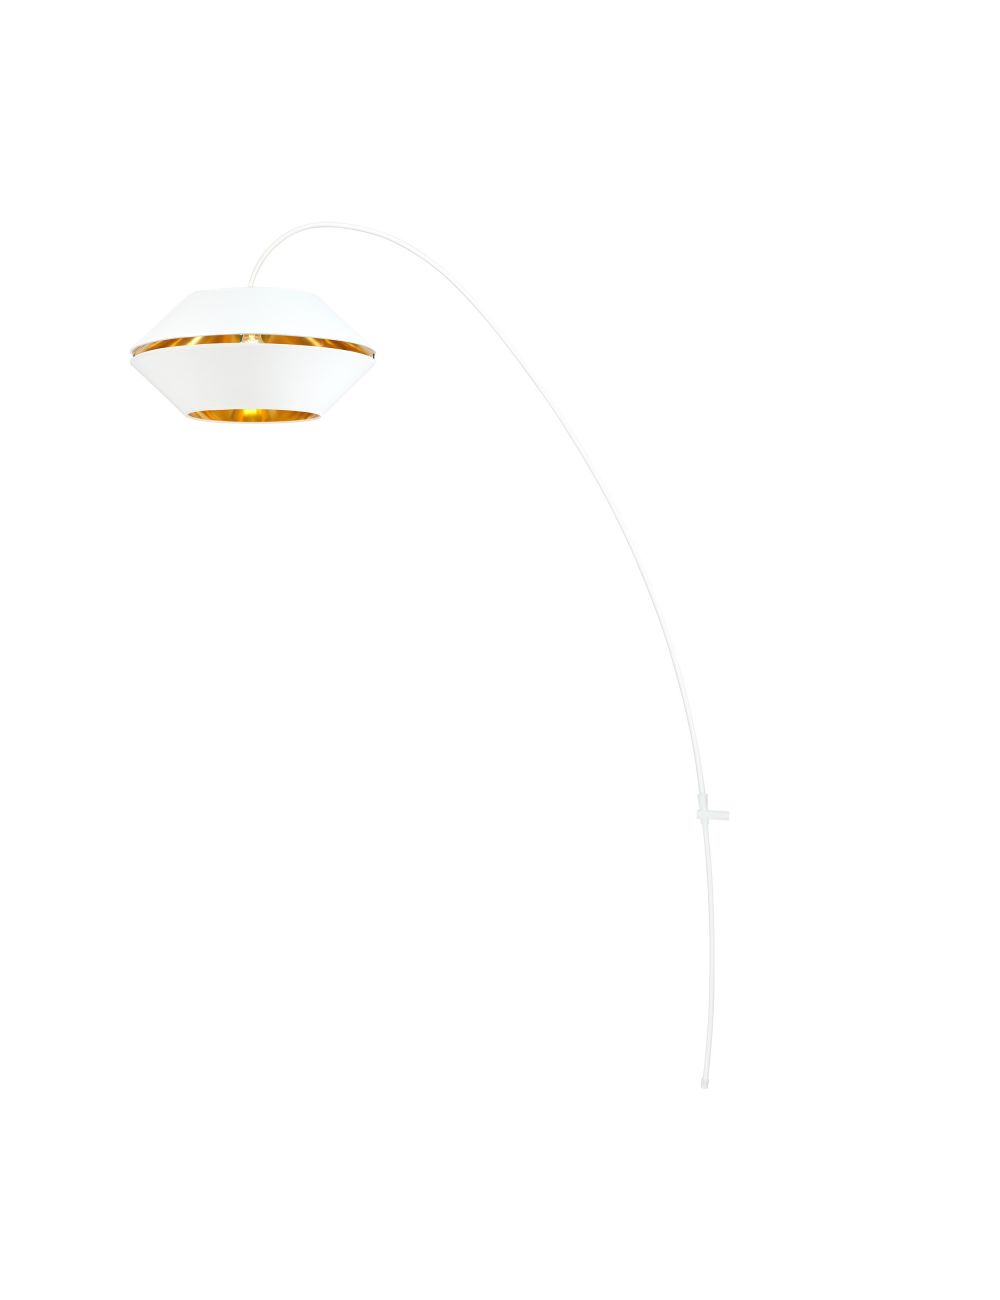 TIARA 1 WHITE/GOLD 1226/1 nowoczesna lampa stojąca design EMIBIG